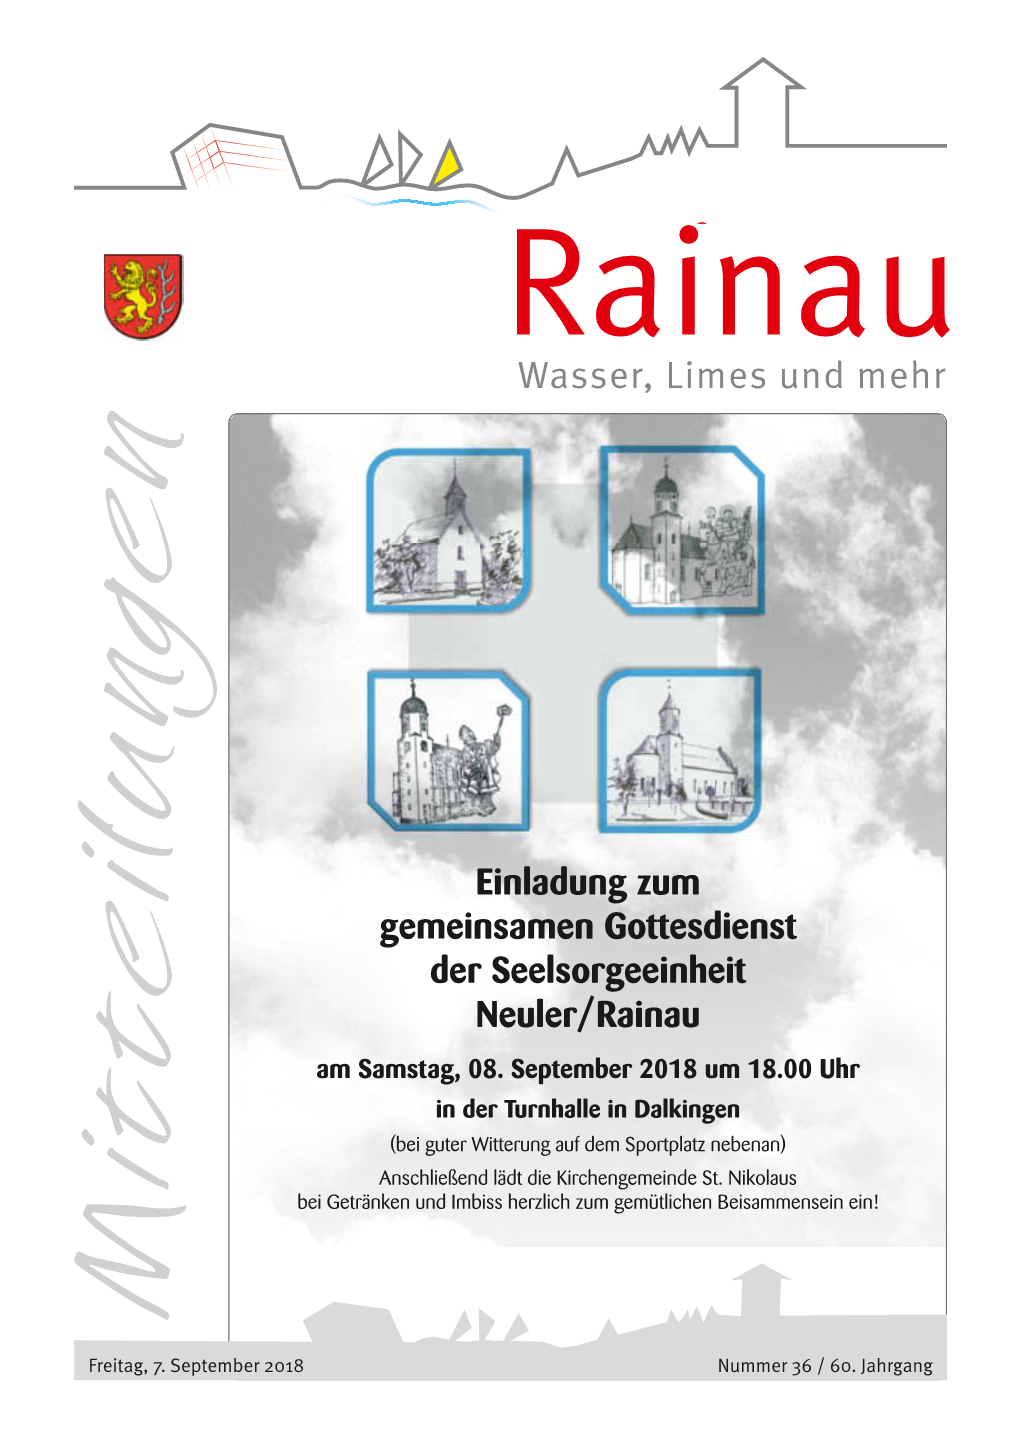 Einladung Zum Gemeinsamen Gottesdienst Der Seelsorgeeinheit Neuler/Rainau Am Samstag, 08